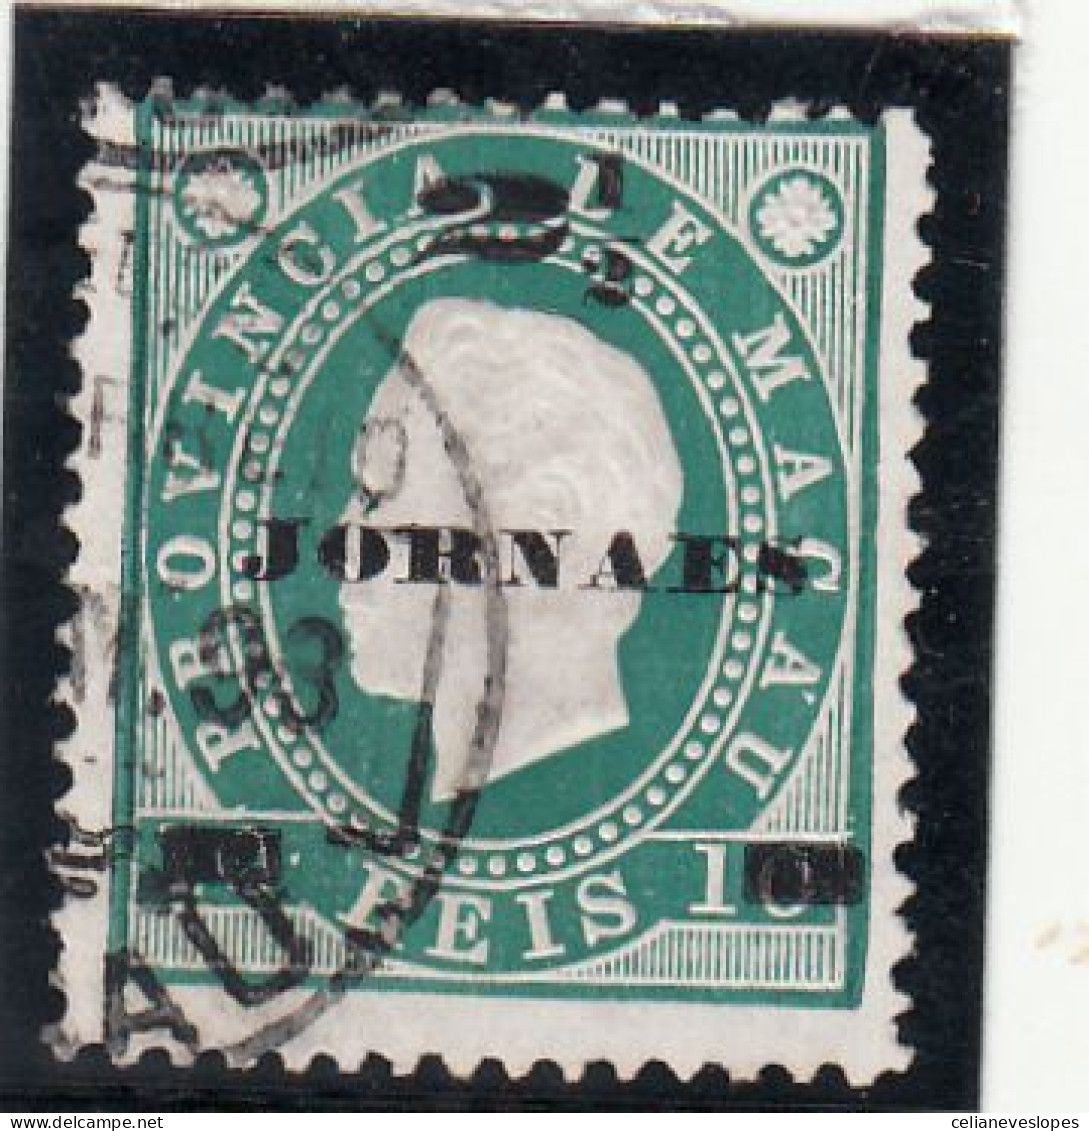 Macau, Macao, D. Luis I Fita Direita Com Sobretaxa, 2 1/2 R. S/ 10 R. Verde D12 3/4, 1892/93, Mundifil Nº 42 Used - Used Stamps